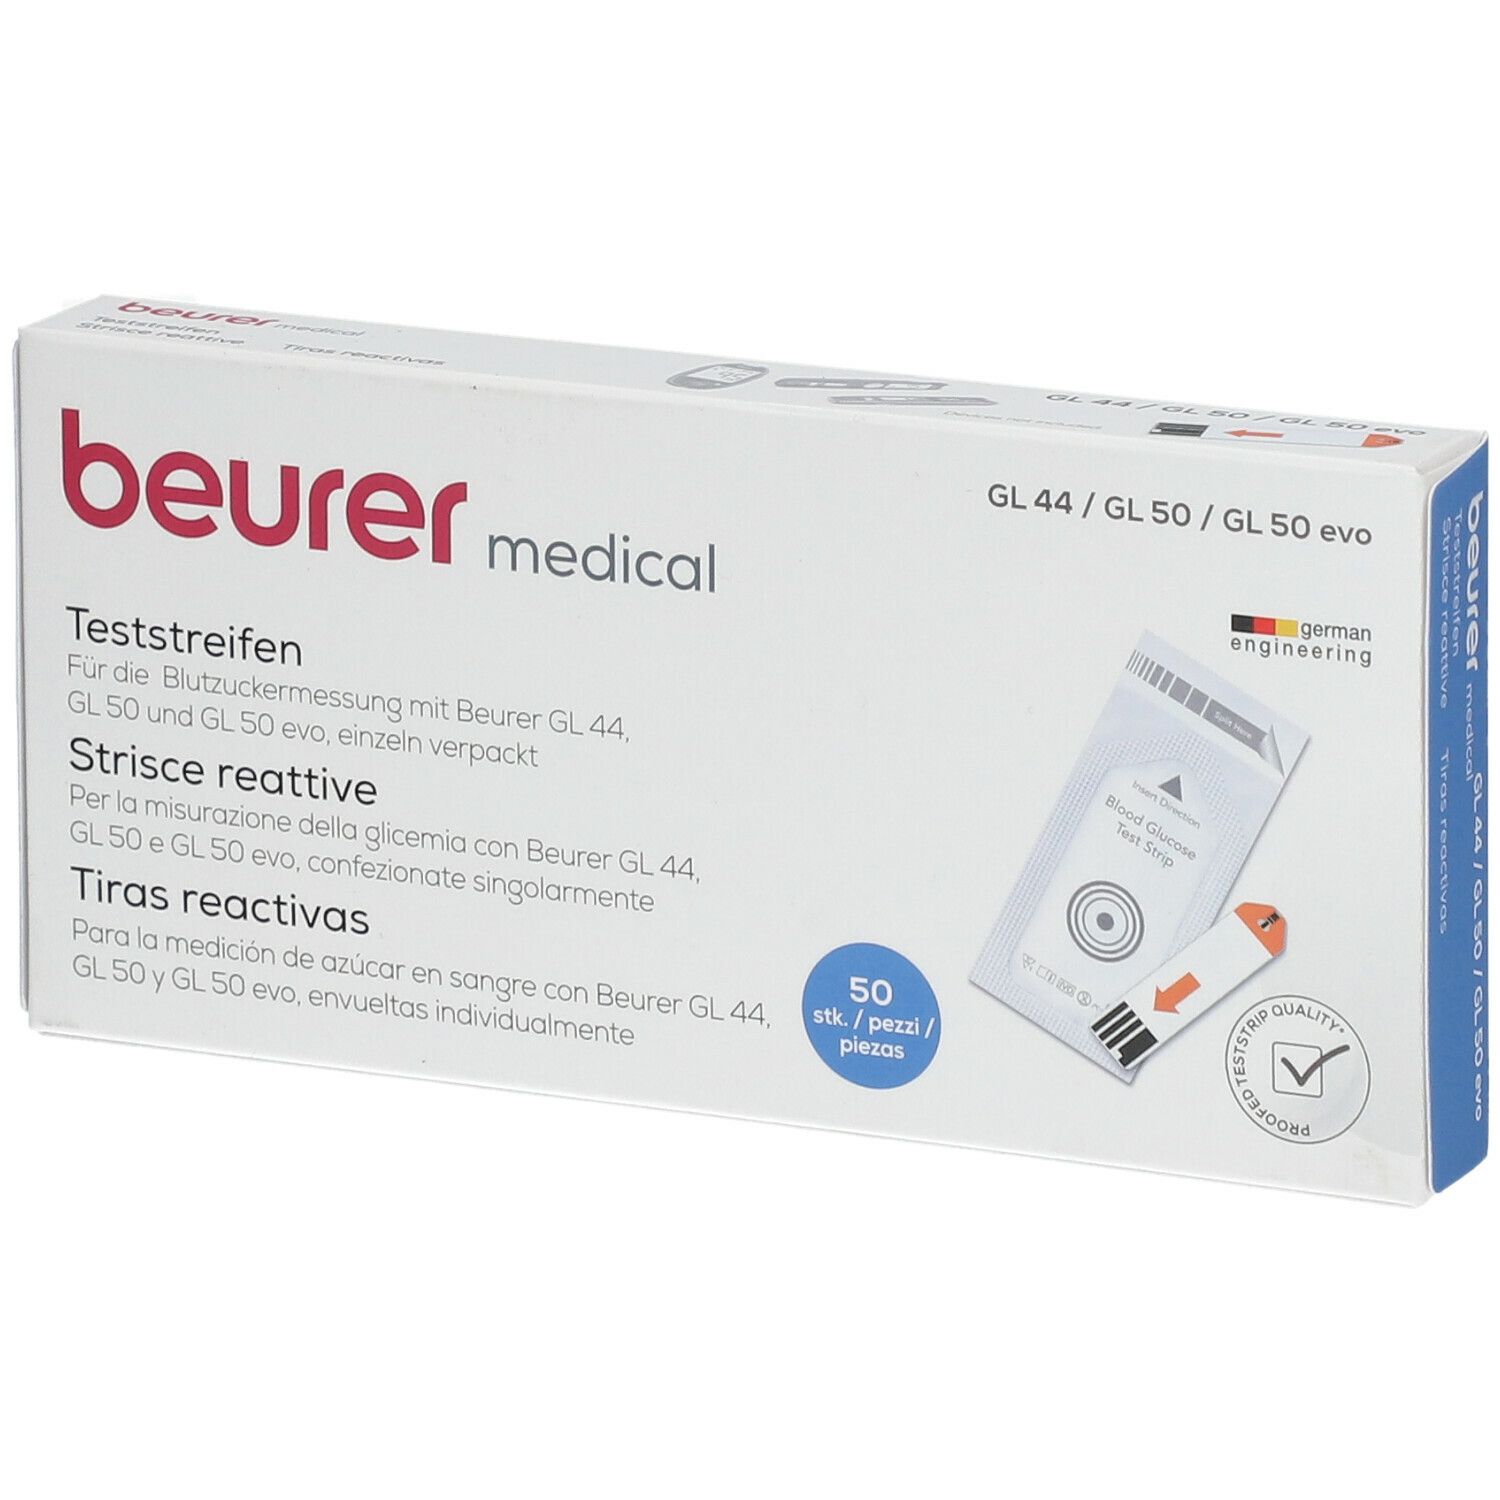 Beurer blood sugar test strips GL44/50 film